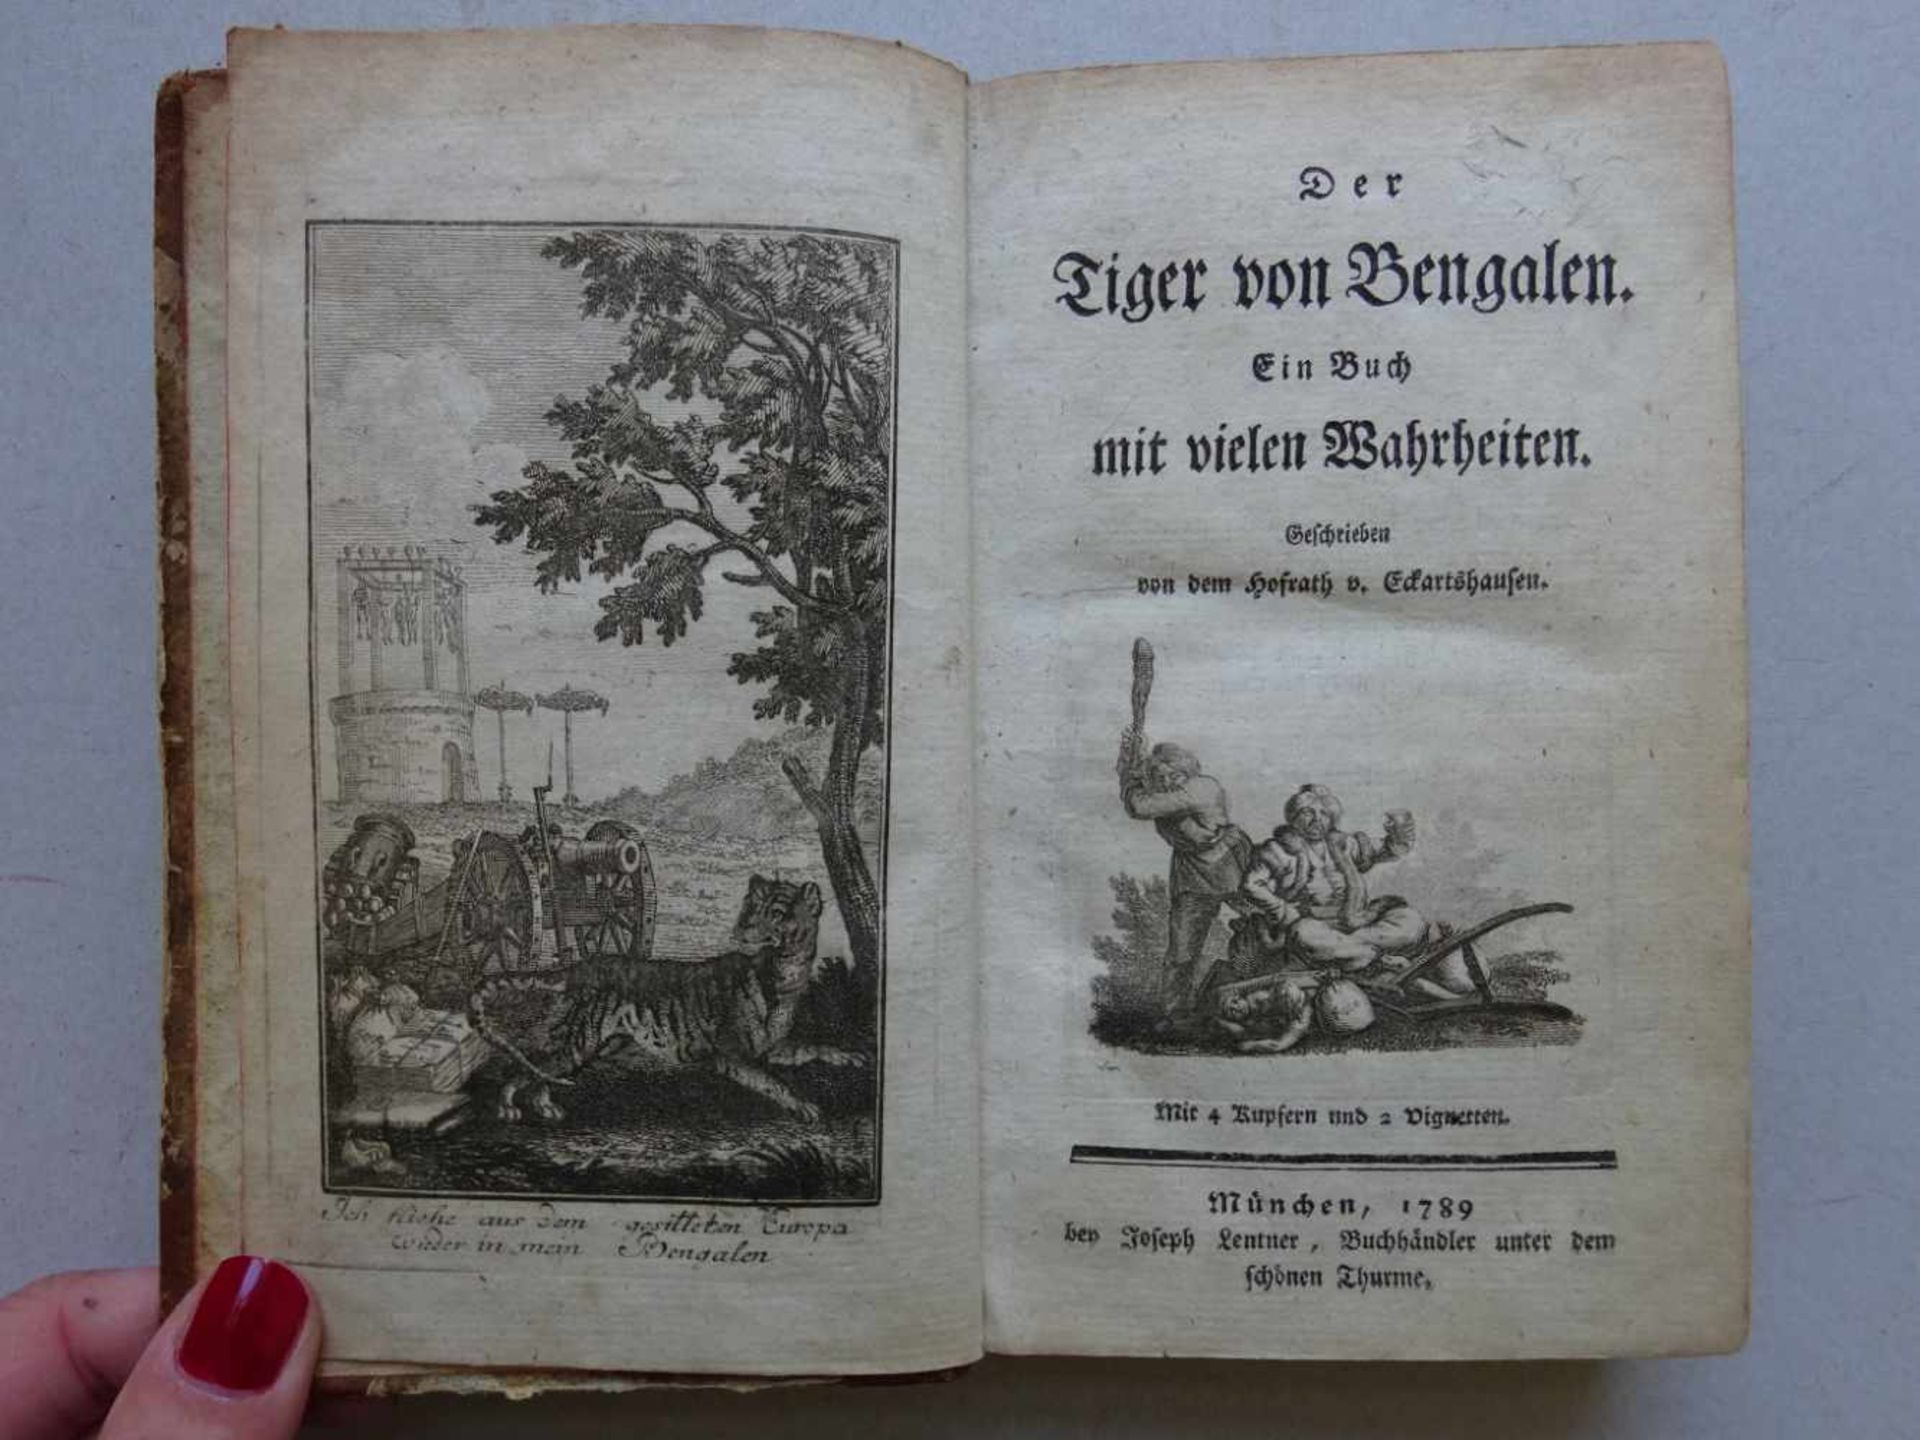 Eckartshausen, K.v.Der Tiger von Bengalen. Ein Buch mit vielen Wahrheiten. München, Lentner, 1789. 3